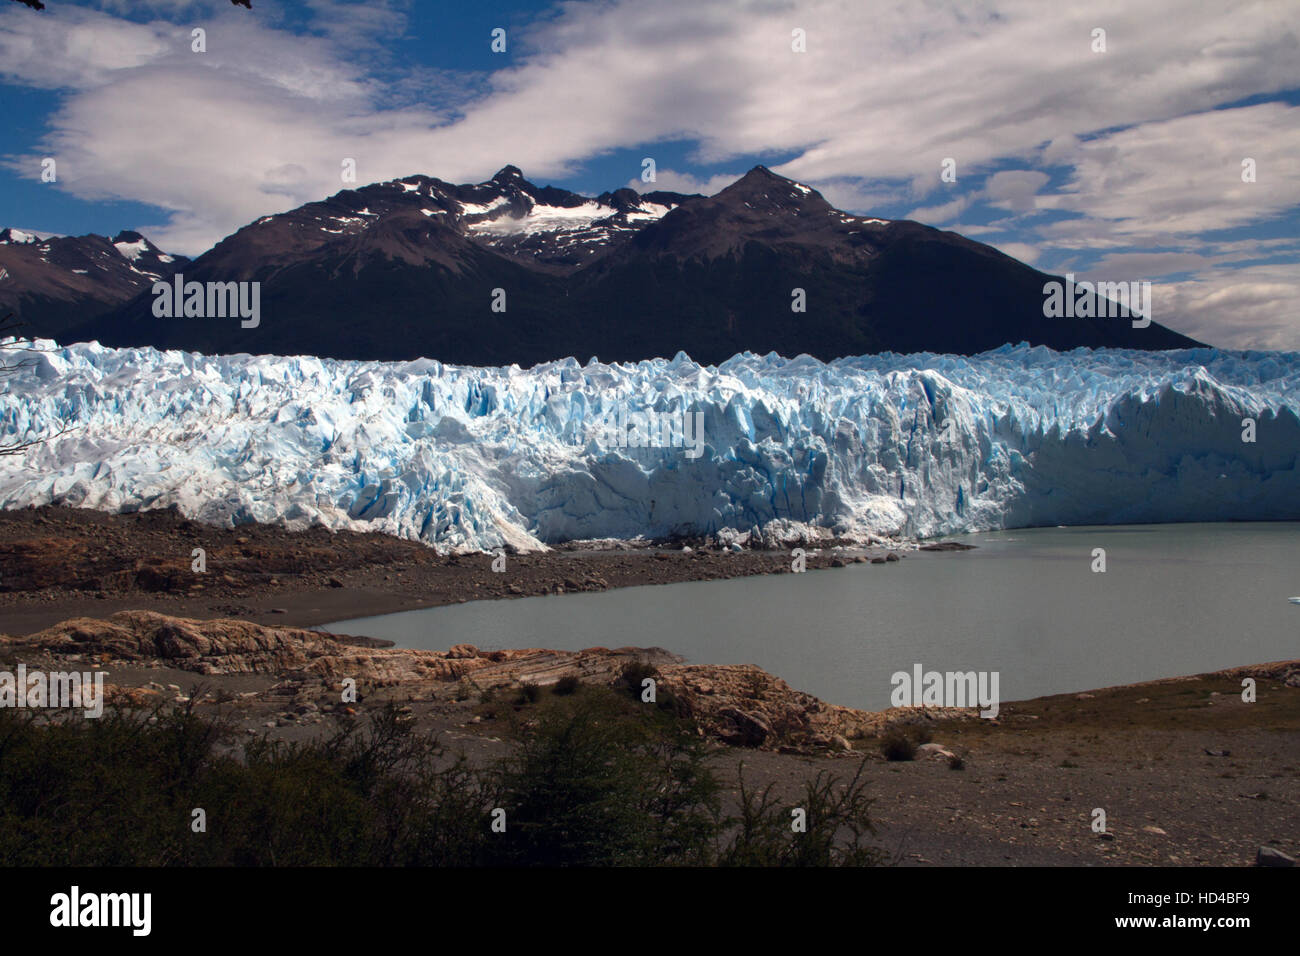 EL CALAFATE, ARG, 06.12.2016: Argentina Glaciar Perito Moreno ubicado en el Parque Nacional Los Glaciares, en el sudoeste de la provincia de Santa Cruz, Argentina Foto de stock